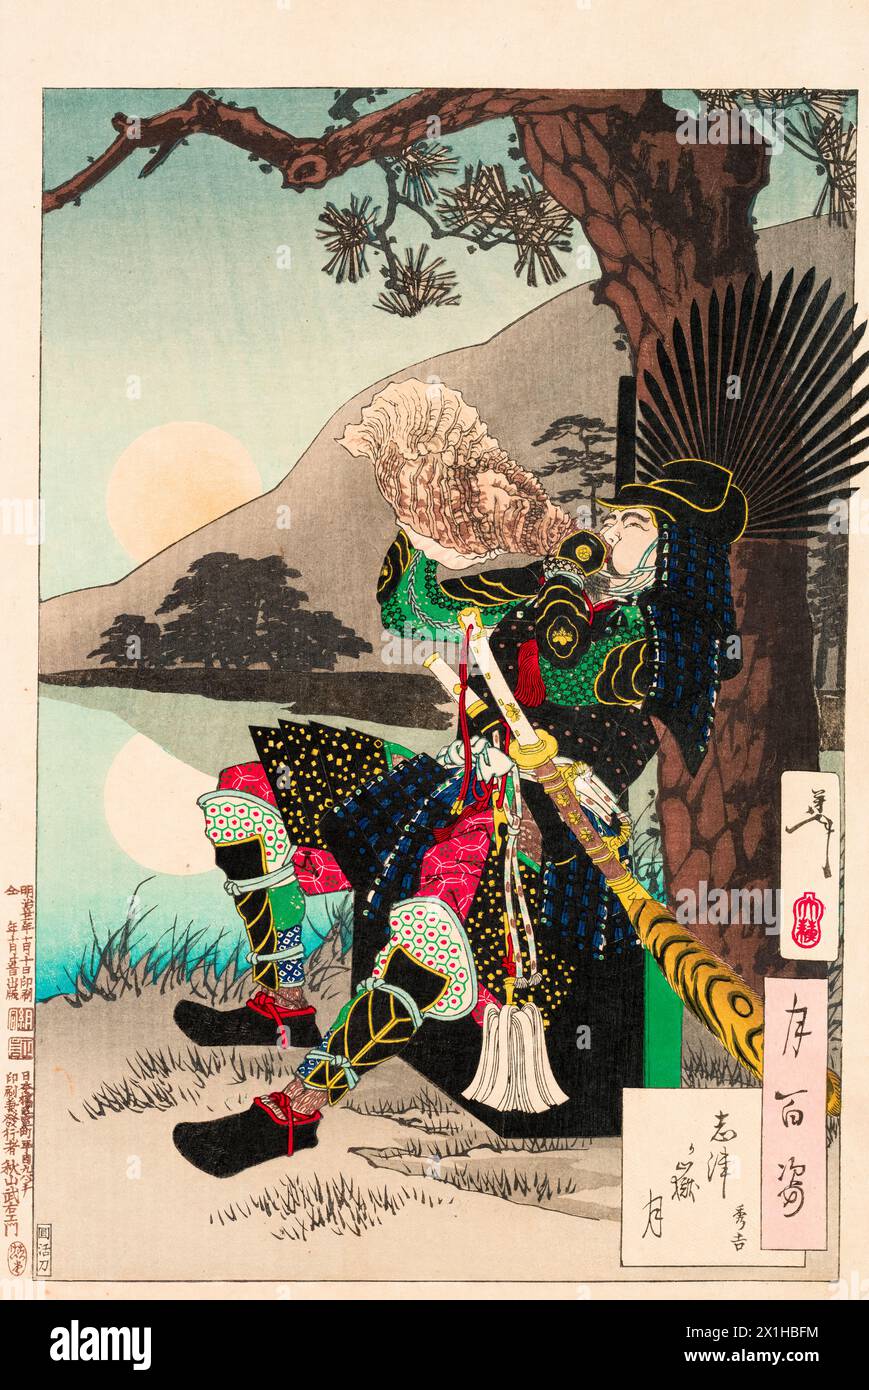 Tsukioka Yoshitoshi, Shizu Peak moon (Shizugatake no tsuki), from the series 'One Hundred Aspects of the Moon', woodcut print, 1885-1882 Stock Photo